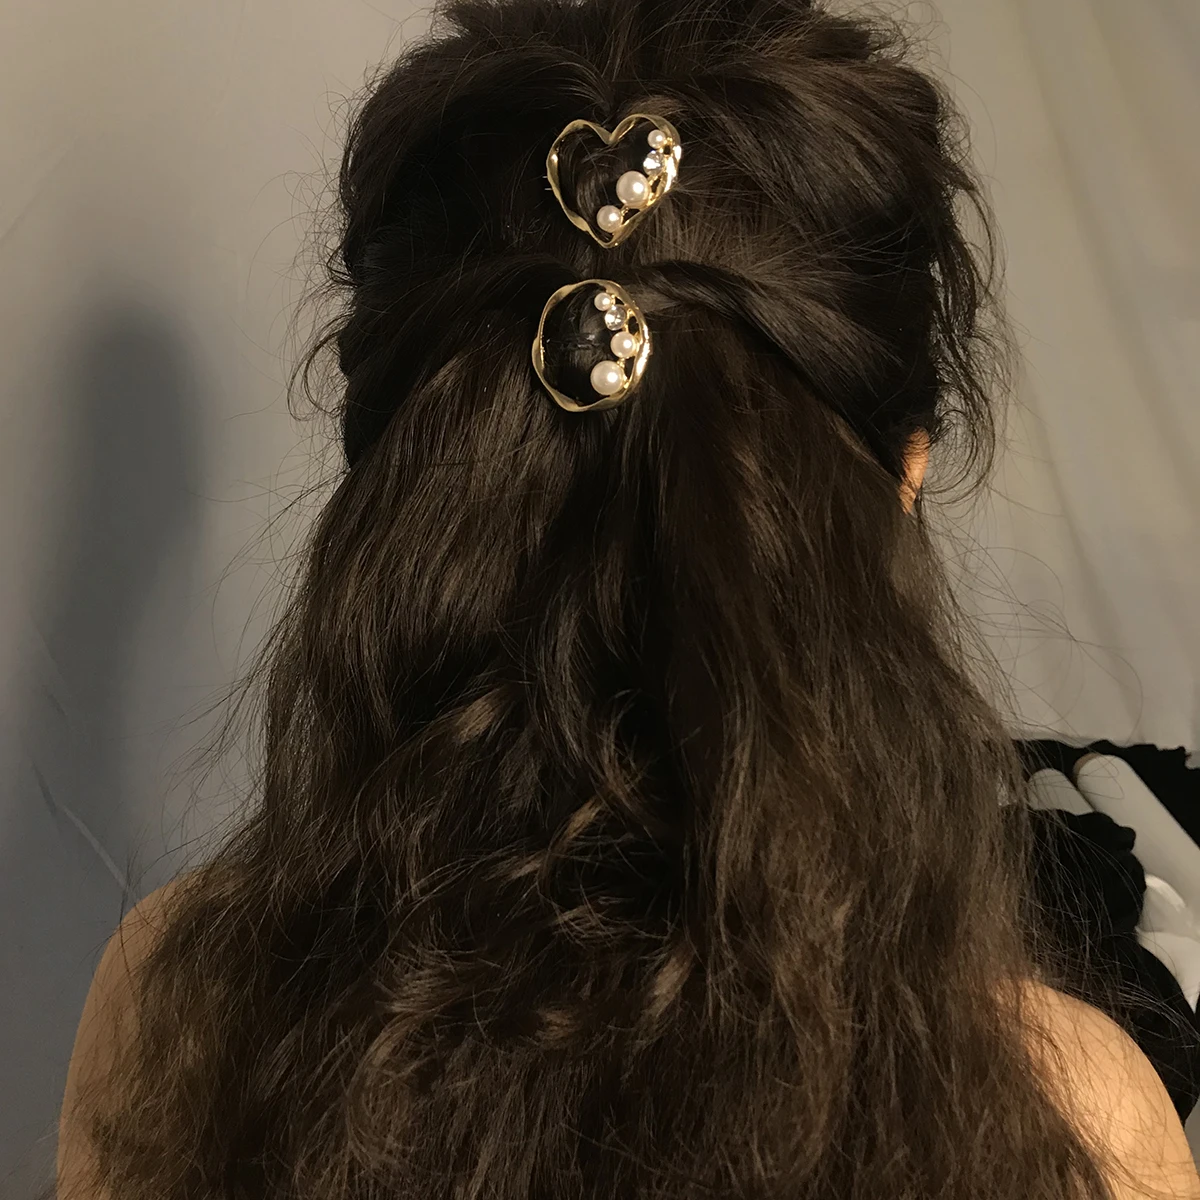 

SHIXIN Fashion Handmade Simulated Pearl Hair Clips Geometric Girls Hair Accessories Headwear BB Clips Hair Clips for Women, Gold